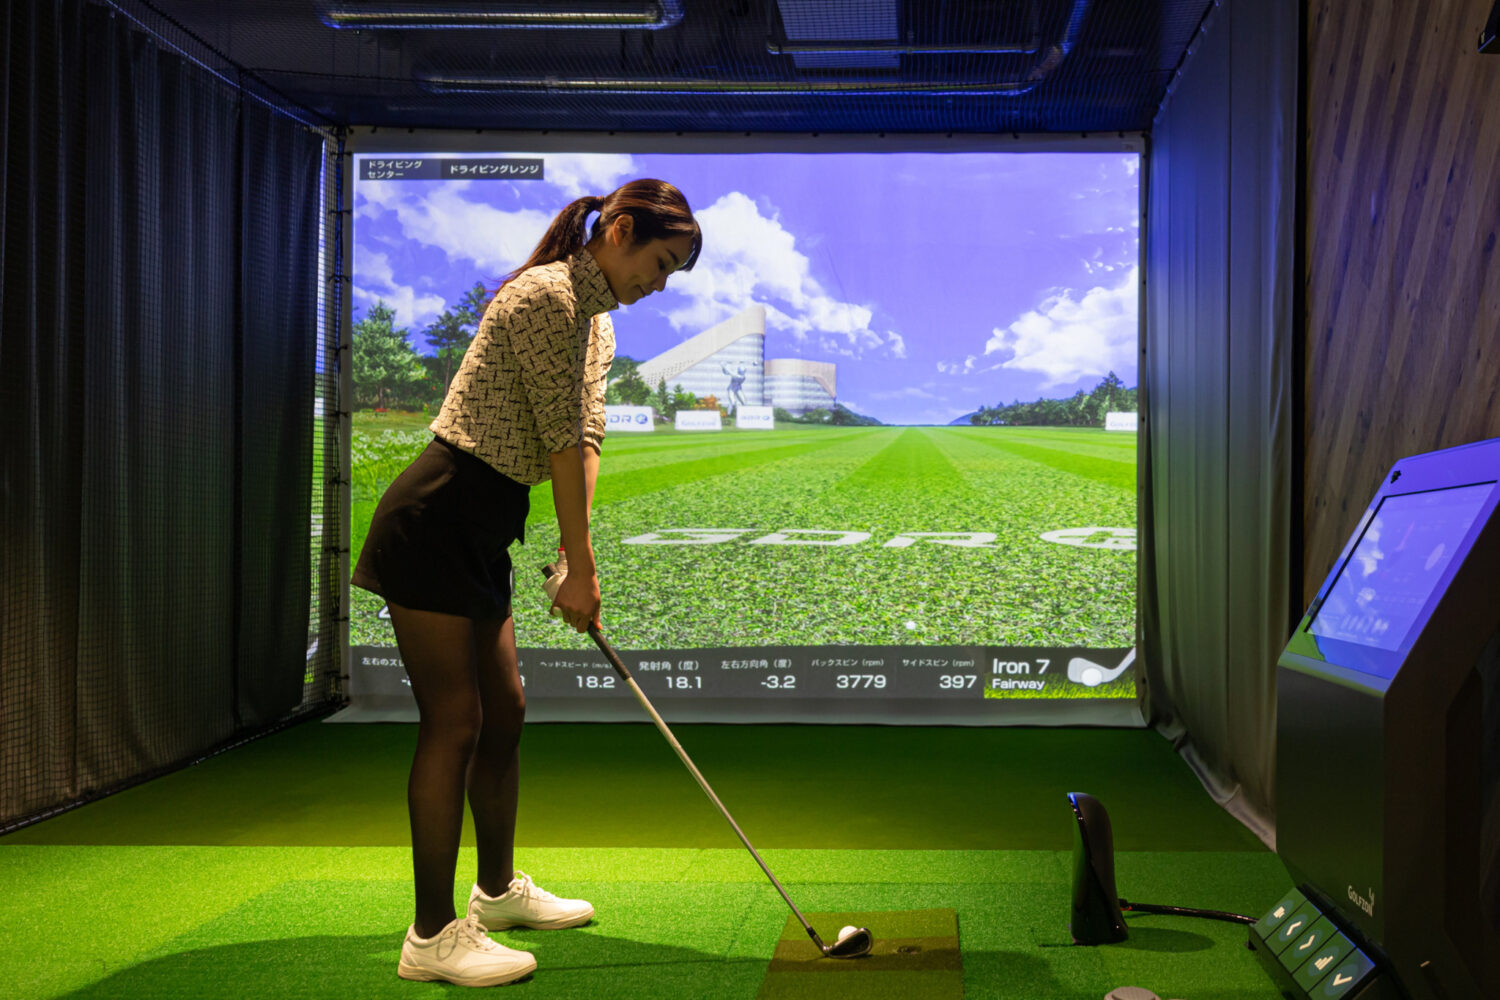 インドアゴルフ練習場でシミュレーションゴルフを利用する女性